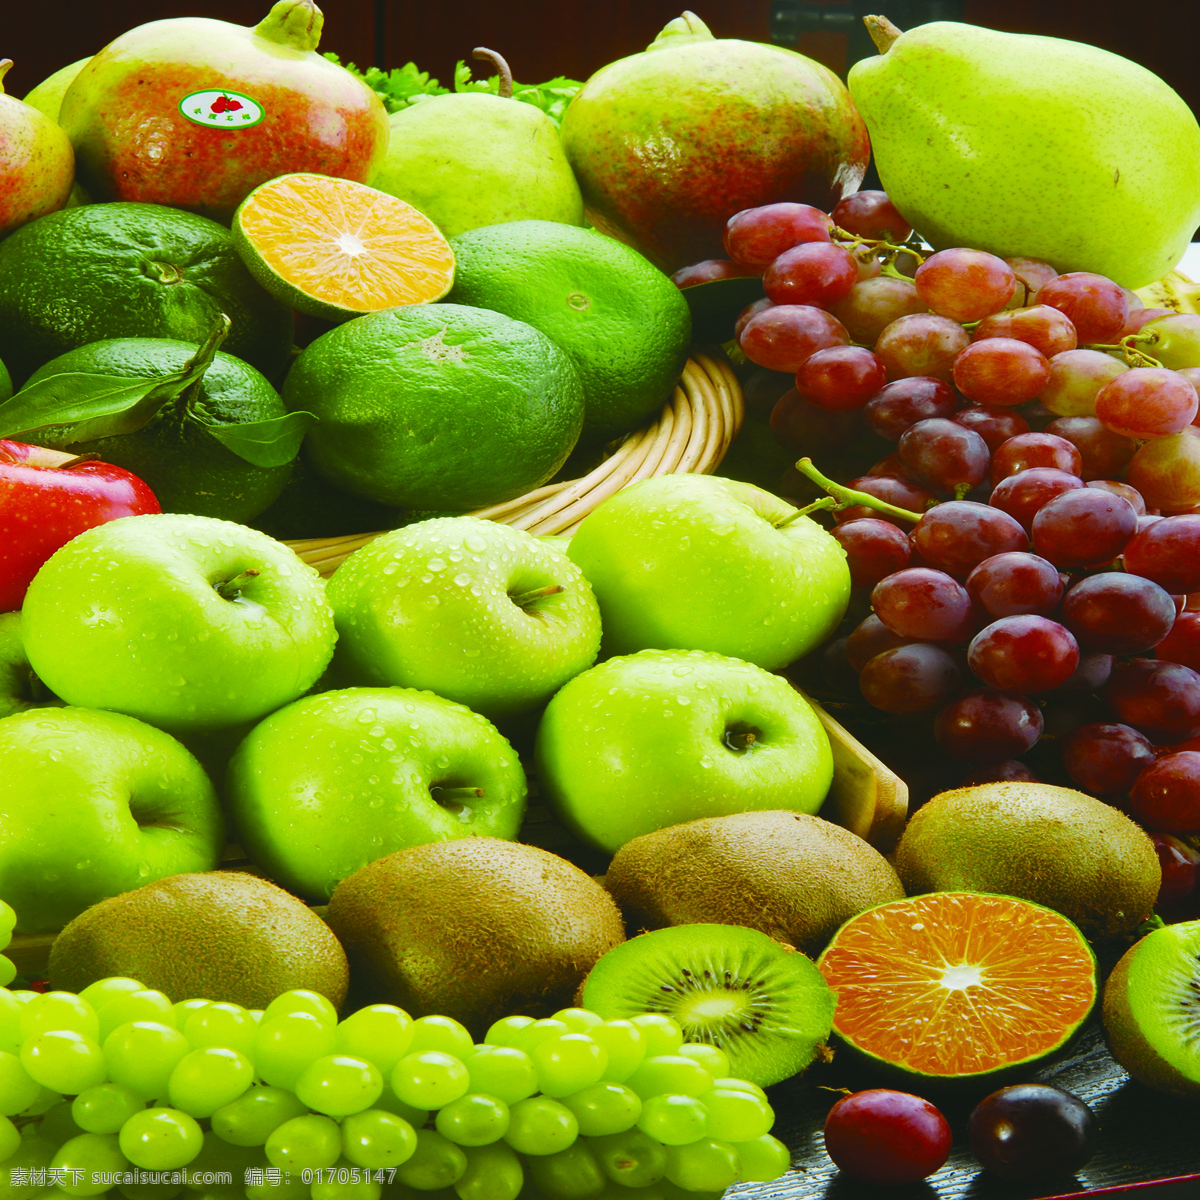 水果图片 水果 水果集锦 各种水果 水果拼盘 热带水果 维生素 丰富的水果 水果堆 苹果 葡萄 橘子 猕猴桃 生物世界